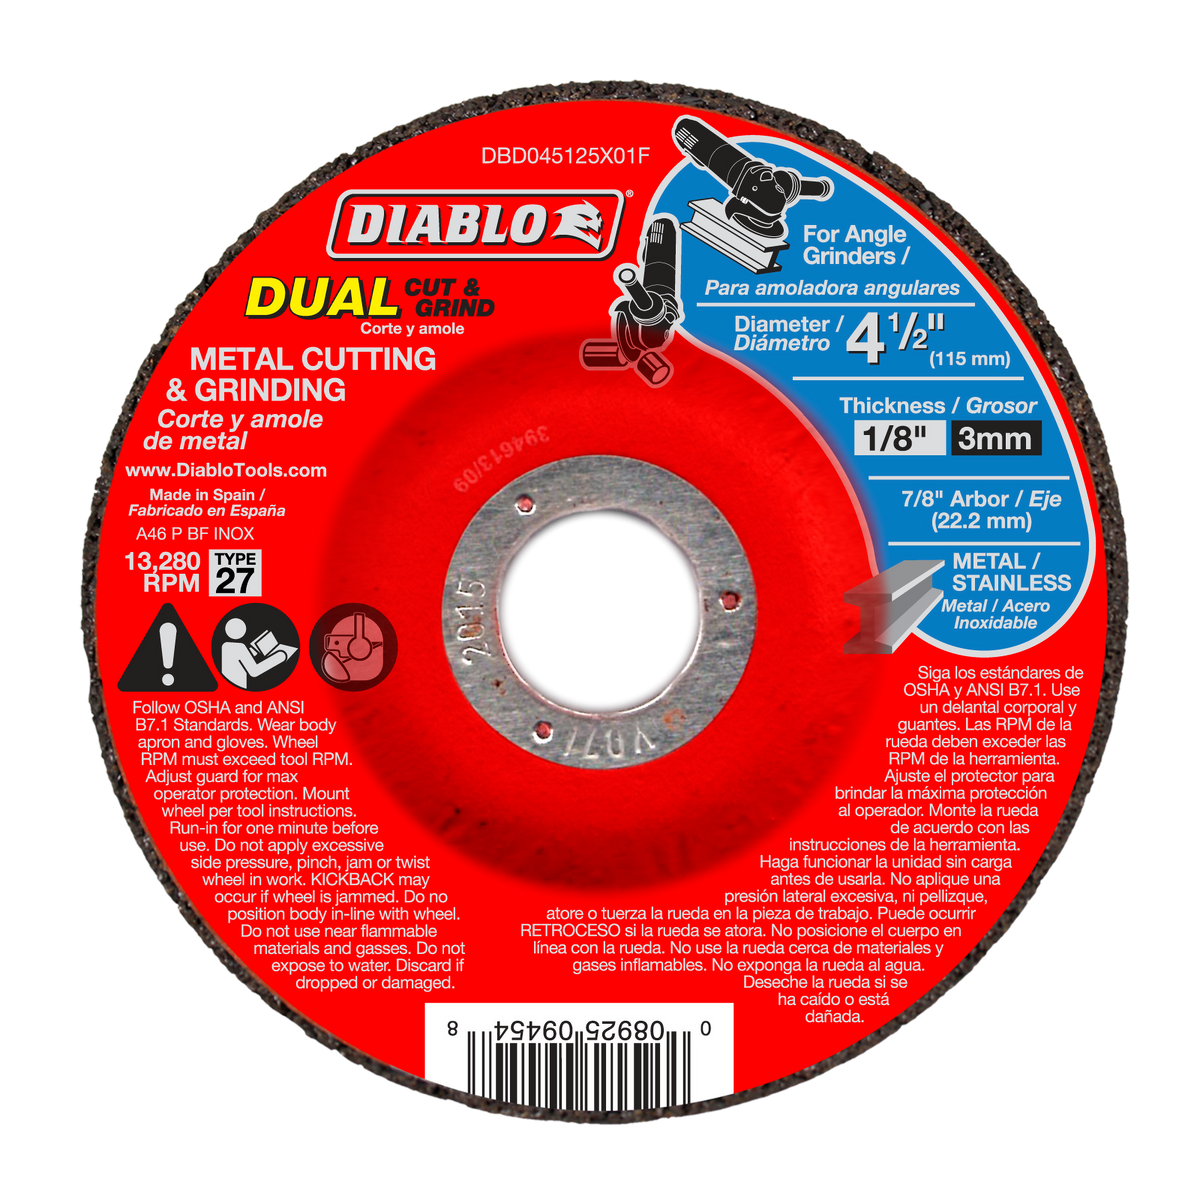 Diablo Metal Dual Cut & Grind Disc